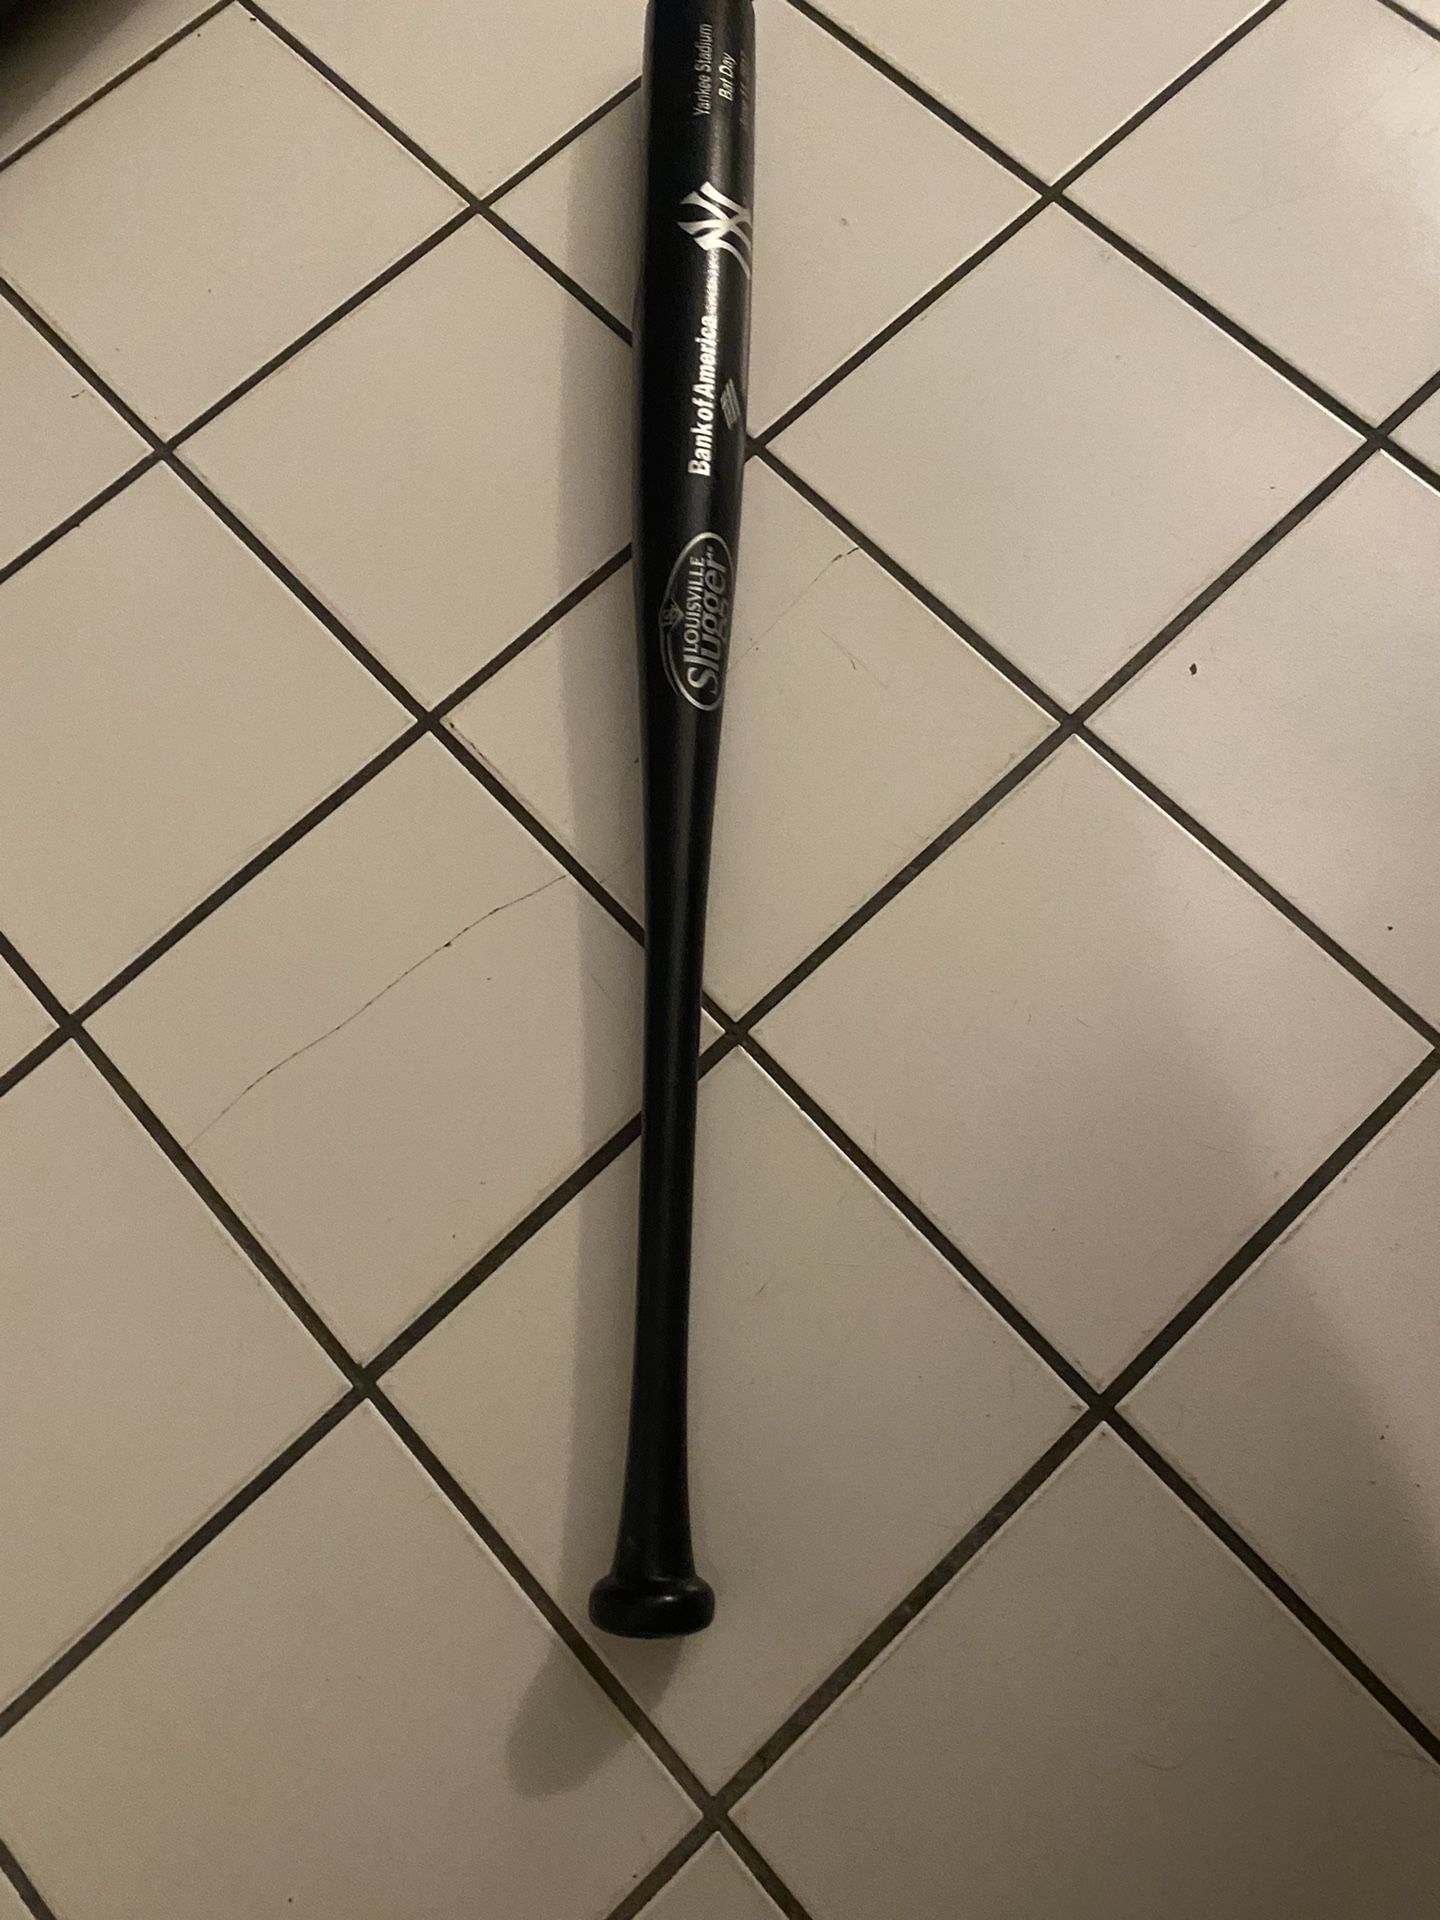 Baseball Bat Yankee Stadium 2017